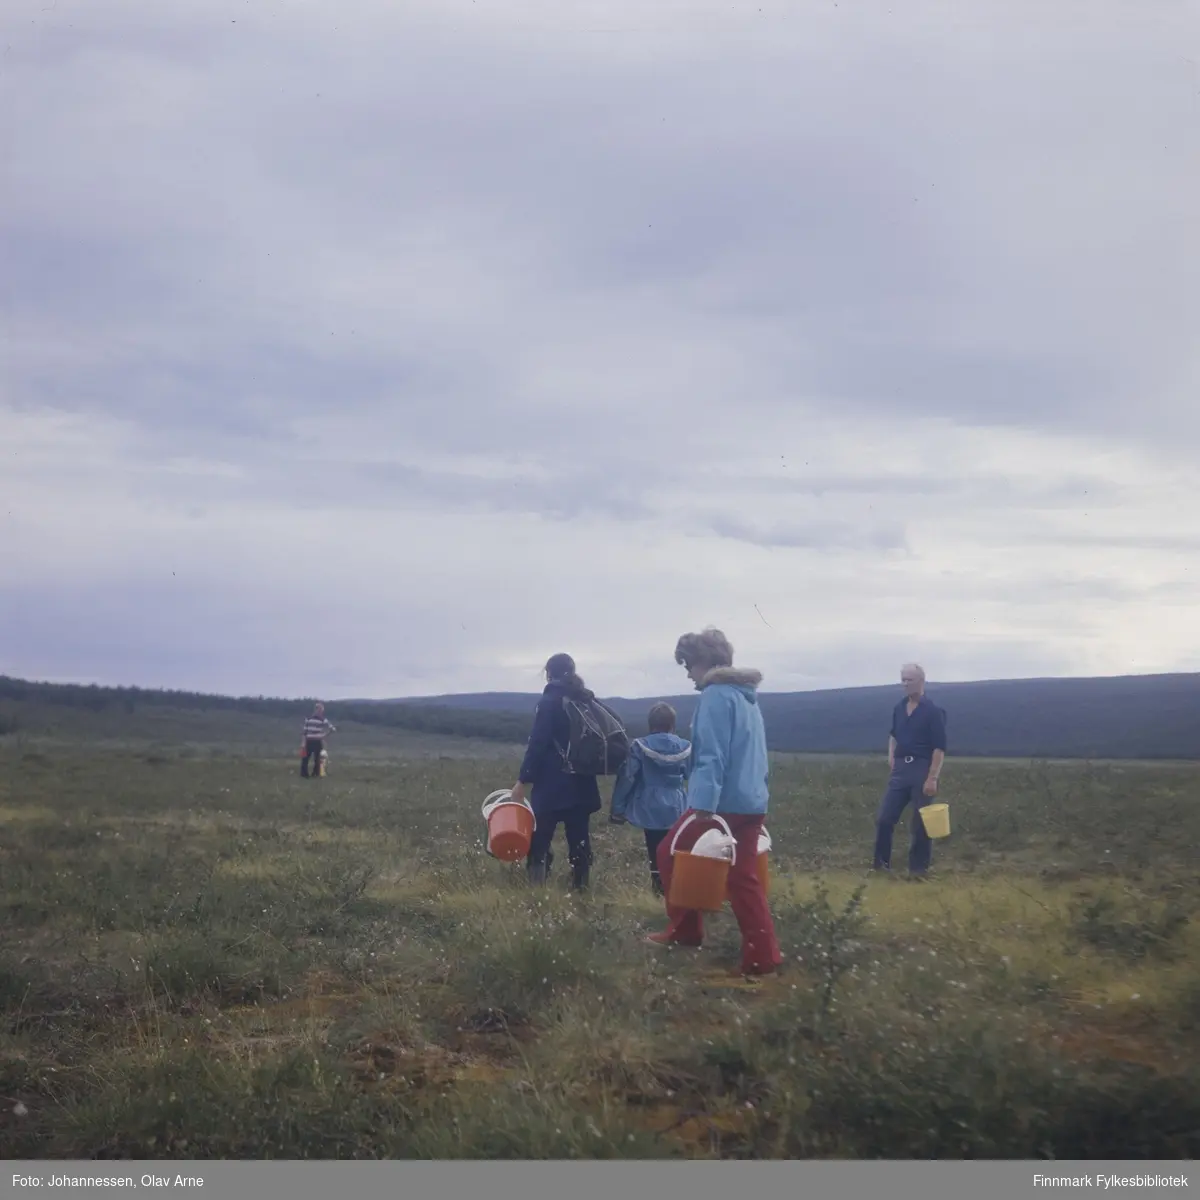 Foto av bærplukkere på tur, antagelig i Finnmark 

Helt til venstre: antagelig Frank Vian og helt itl høyre hans far Boye Vian

Kvinnen helt til venstre i lyseblå jakke het Laila Vian og var kone til Frank Vian

Foto trolig tatt på 1960/70-tallet